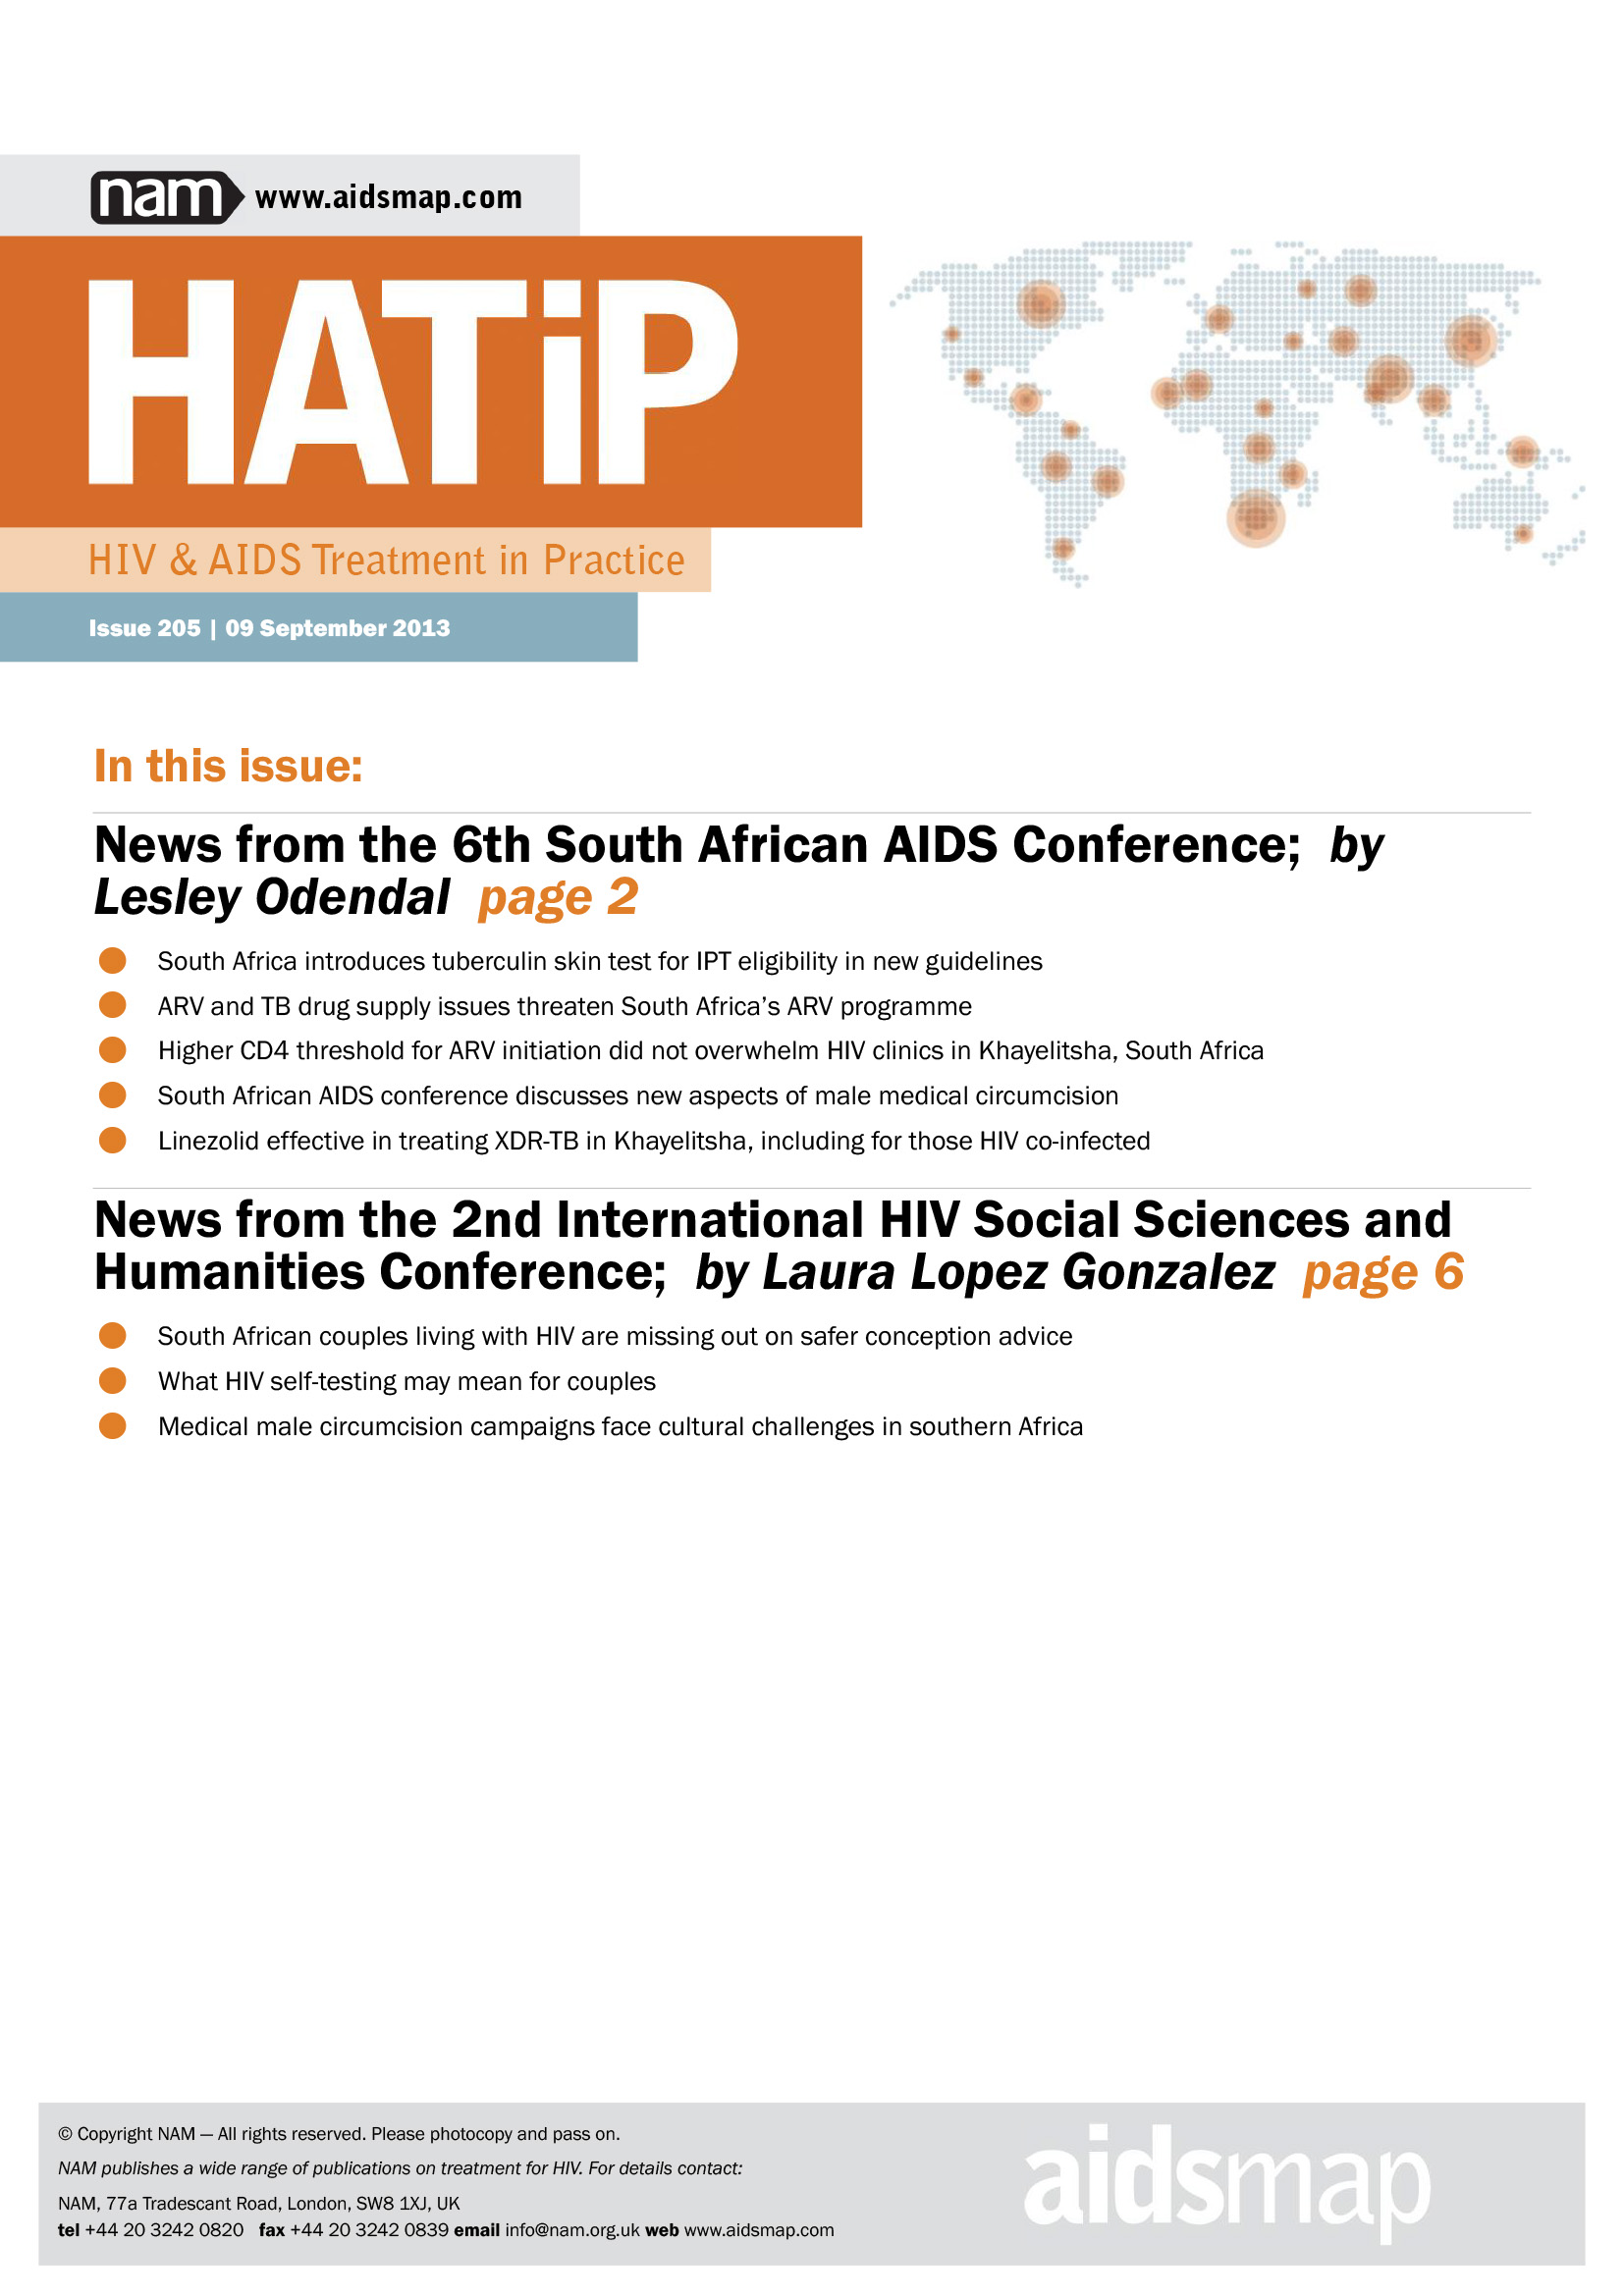 HATiP: El tratamiento del VIH y el sida en la práctica - portada